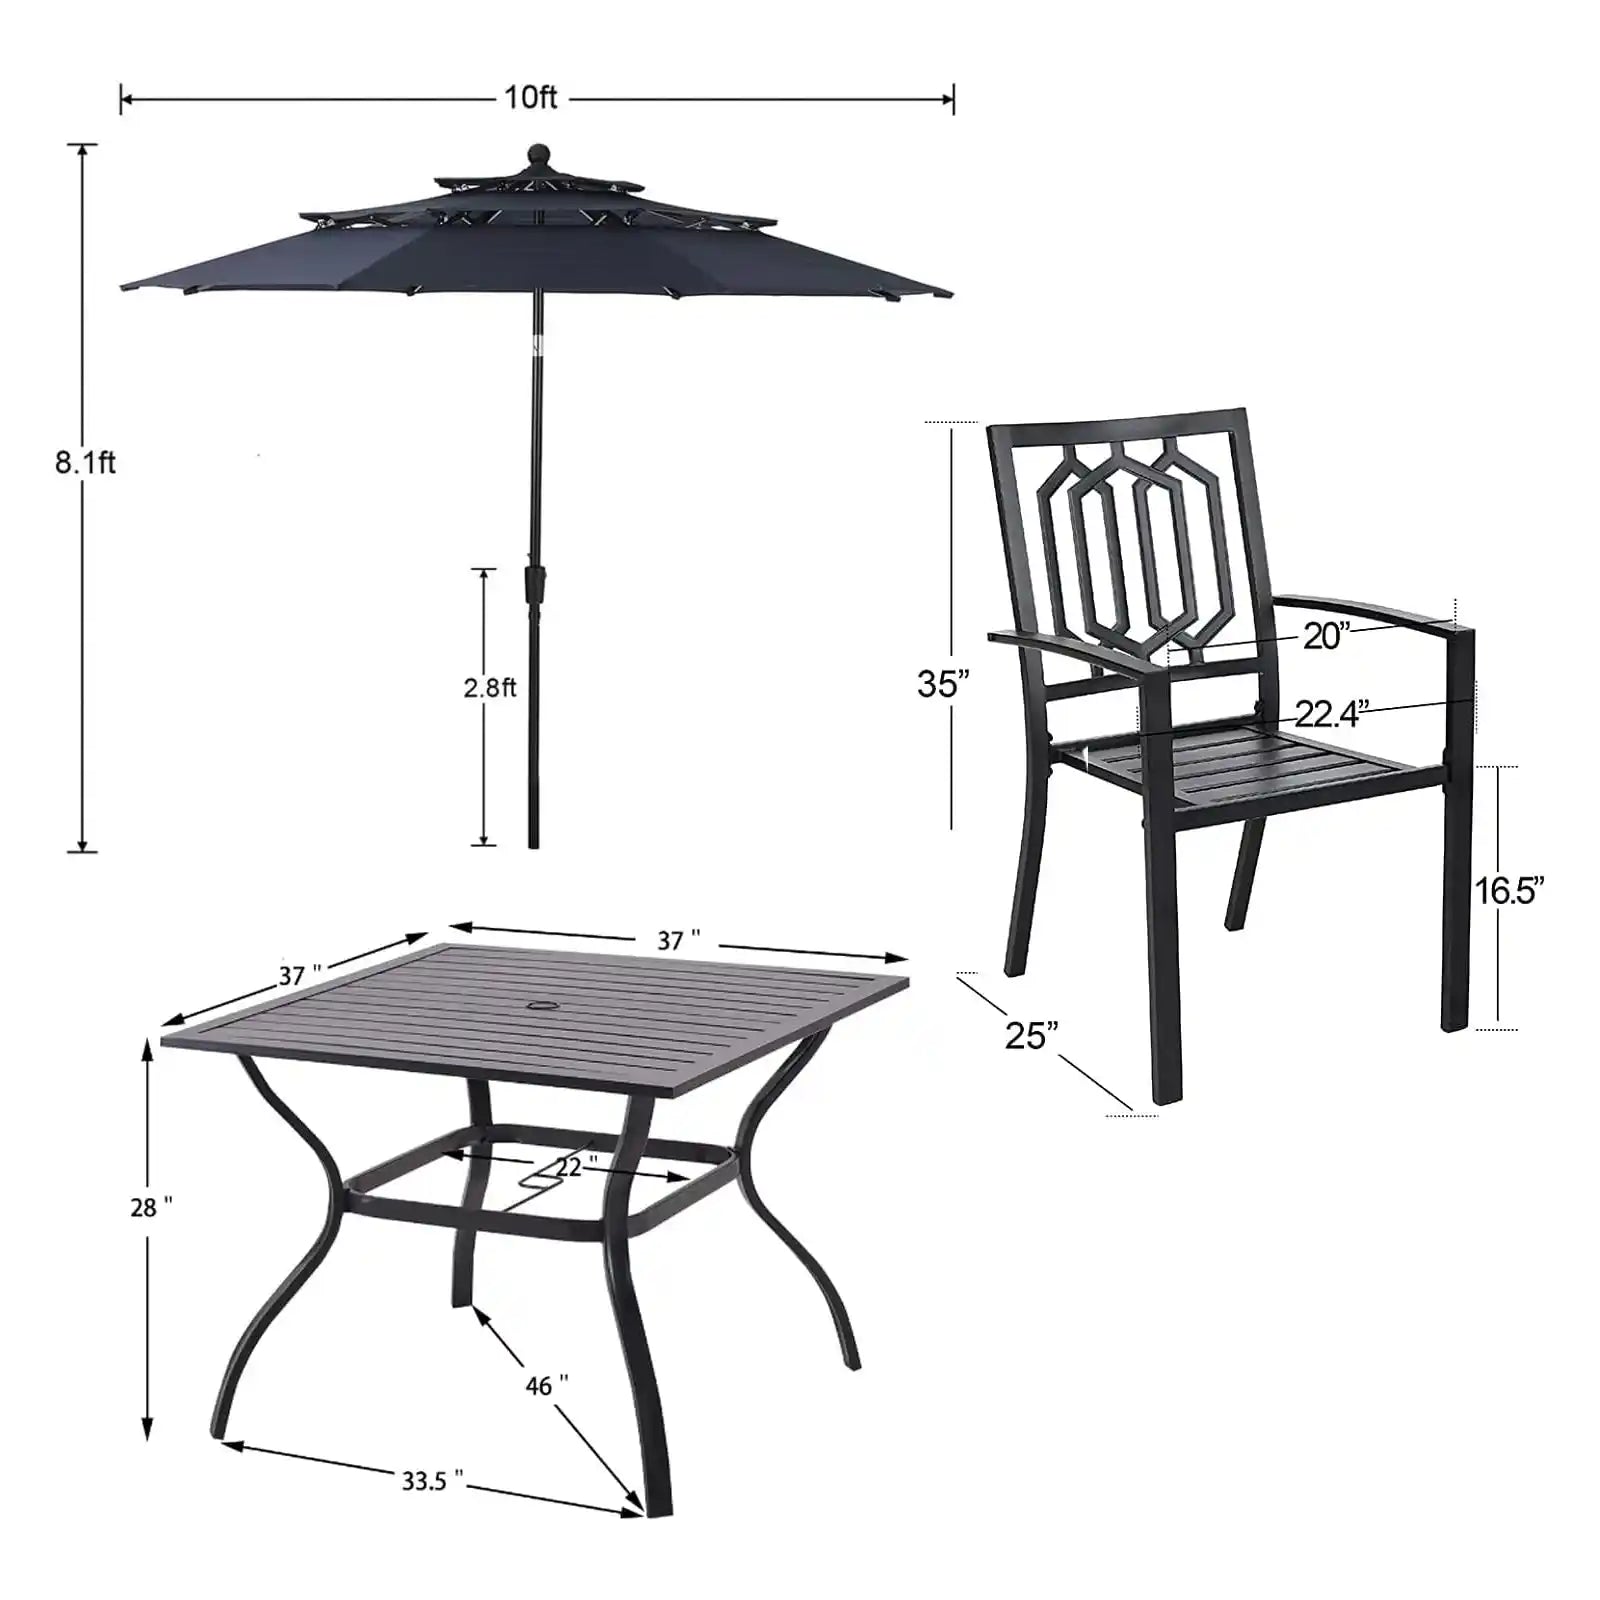 Juego de comedor para patio, 6 piezas con sombrilla, 1 mesa cuadrada de metal, 4 sillas apilables de metal para exteriores y sombrilla de inclinación automática de 3 niveles de 10 pies 